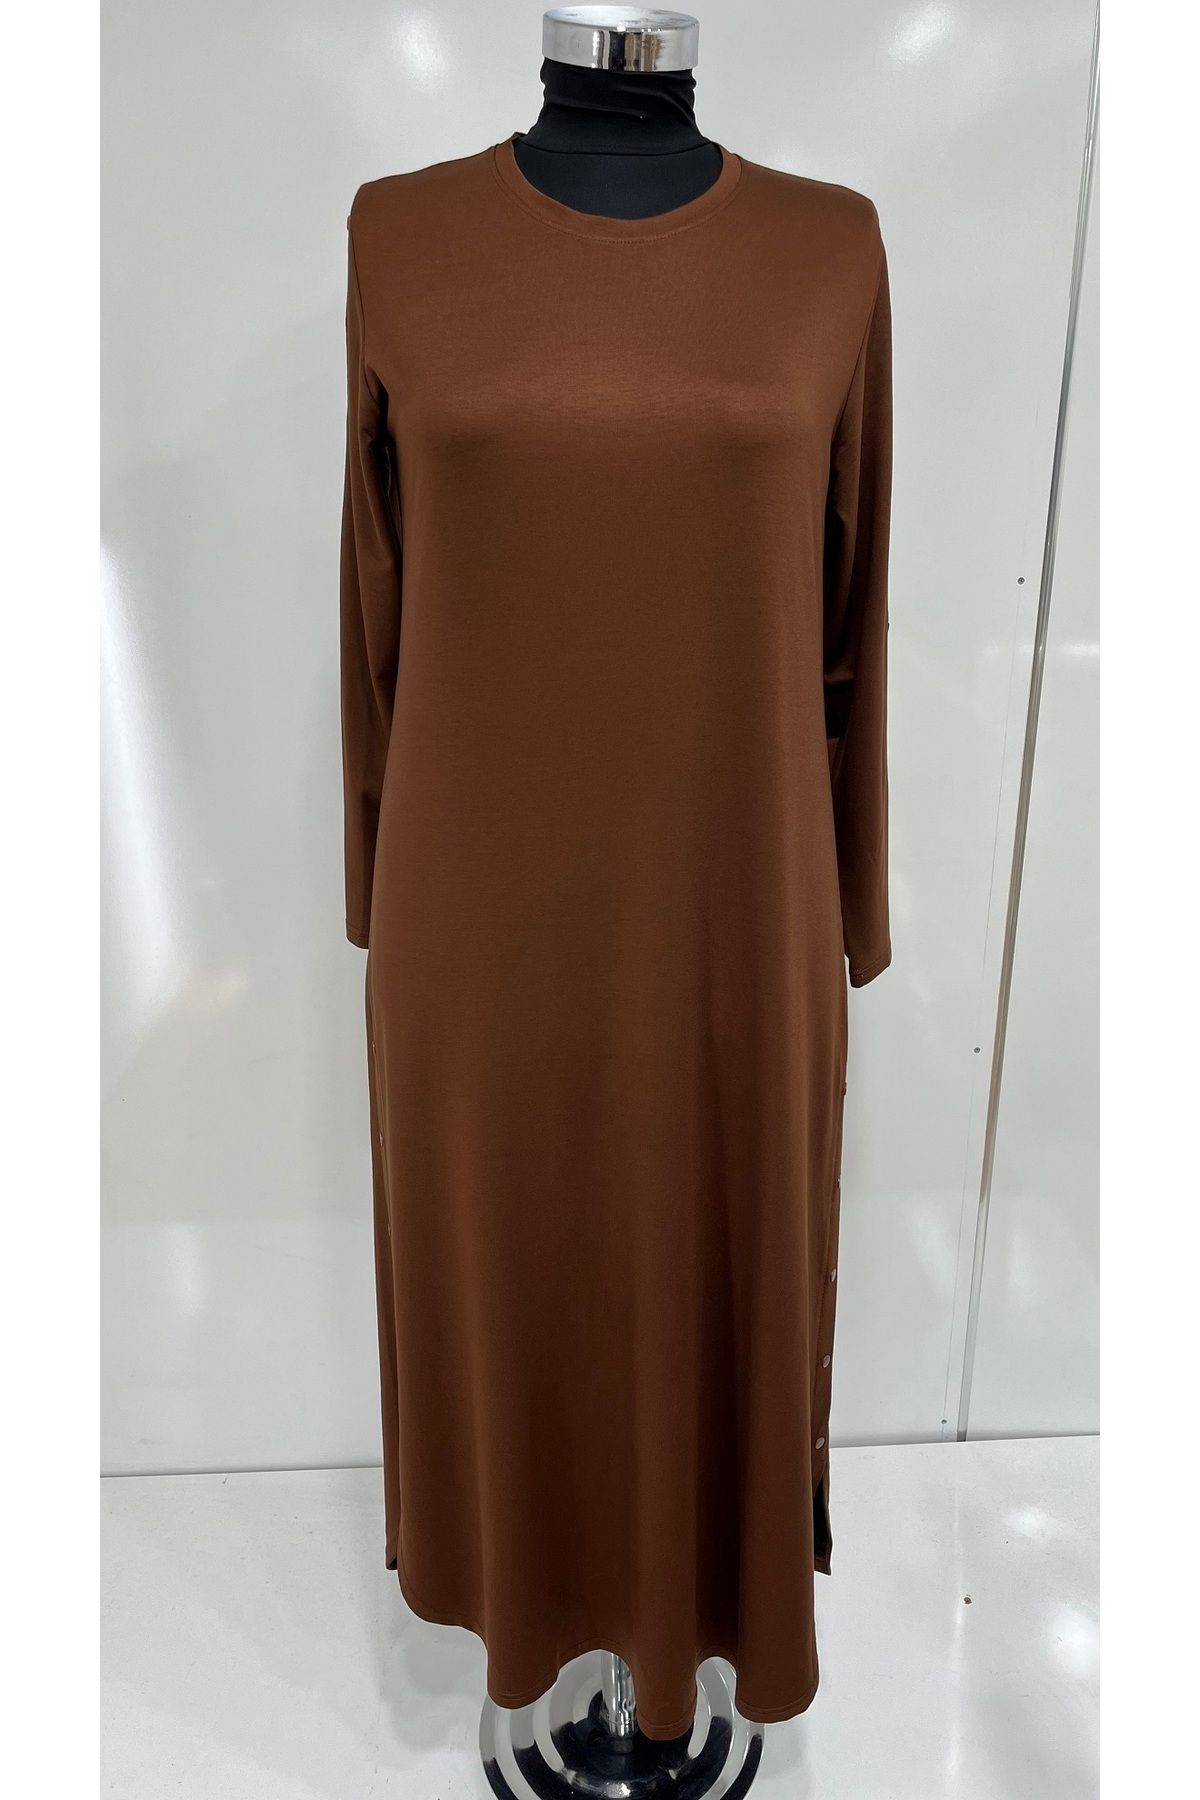 HESNA Kadın Büyük Beden Kol ve Eteği Zımba Detaylı Kahverengi Anne Elbisesi